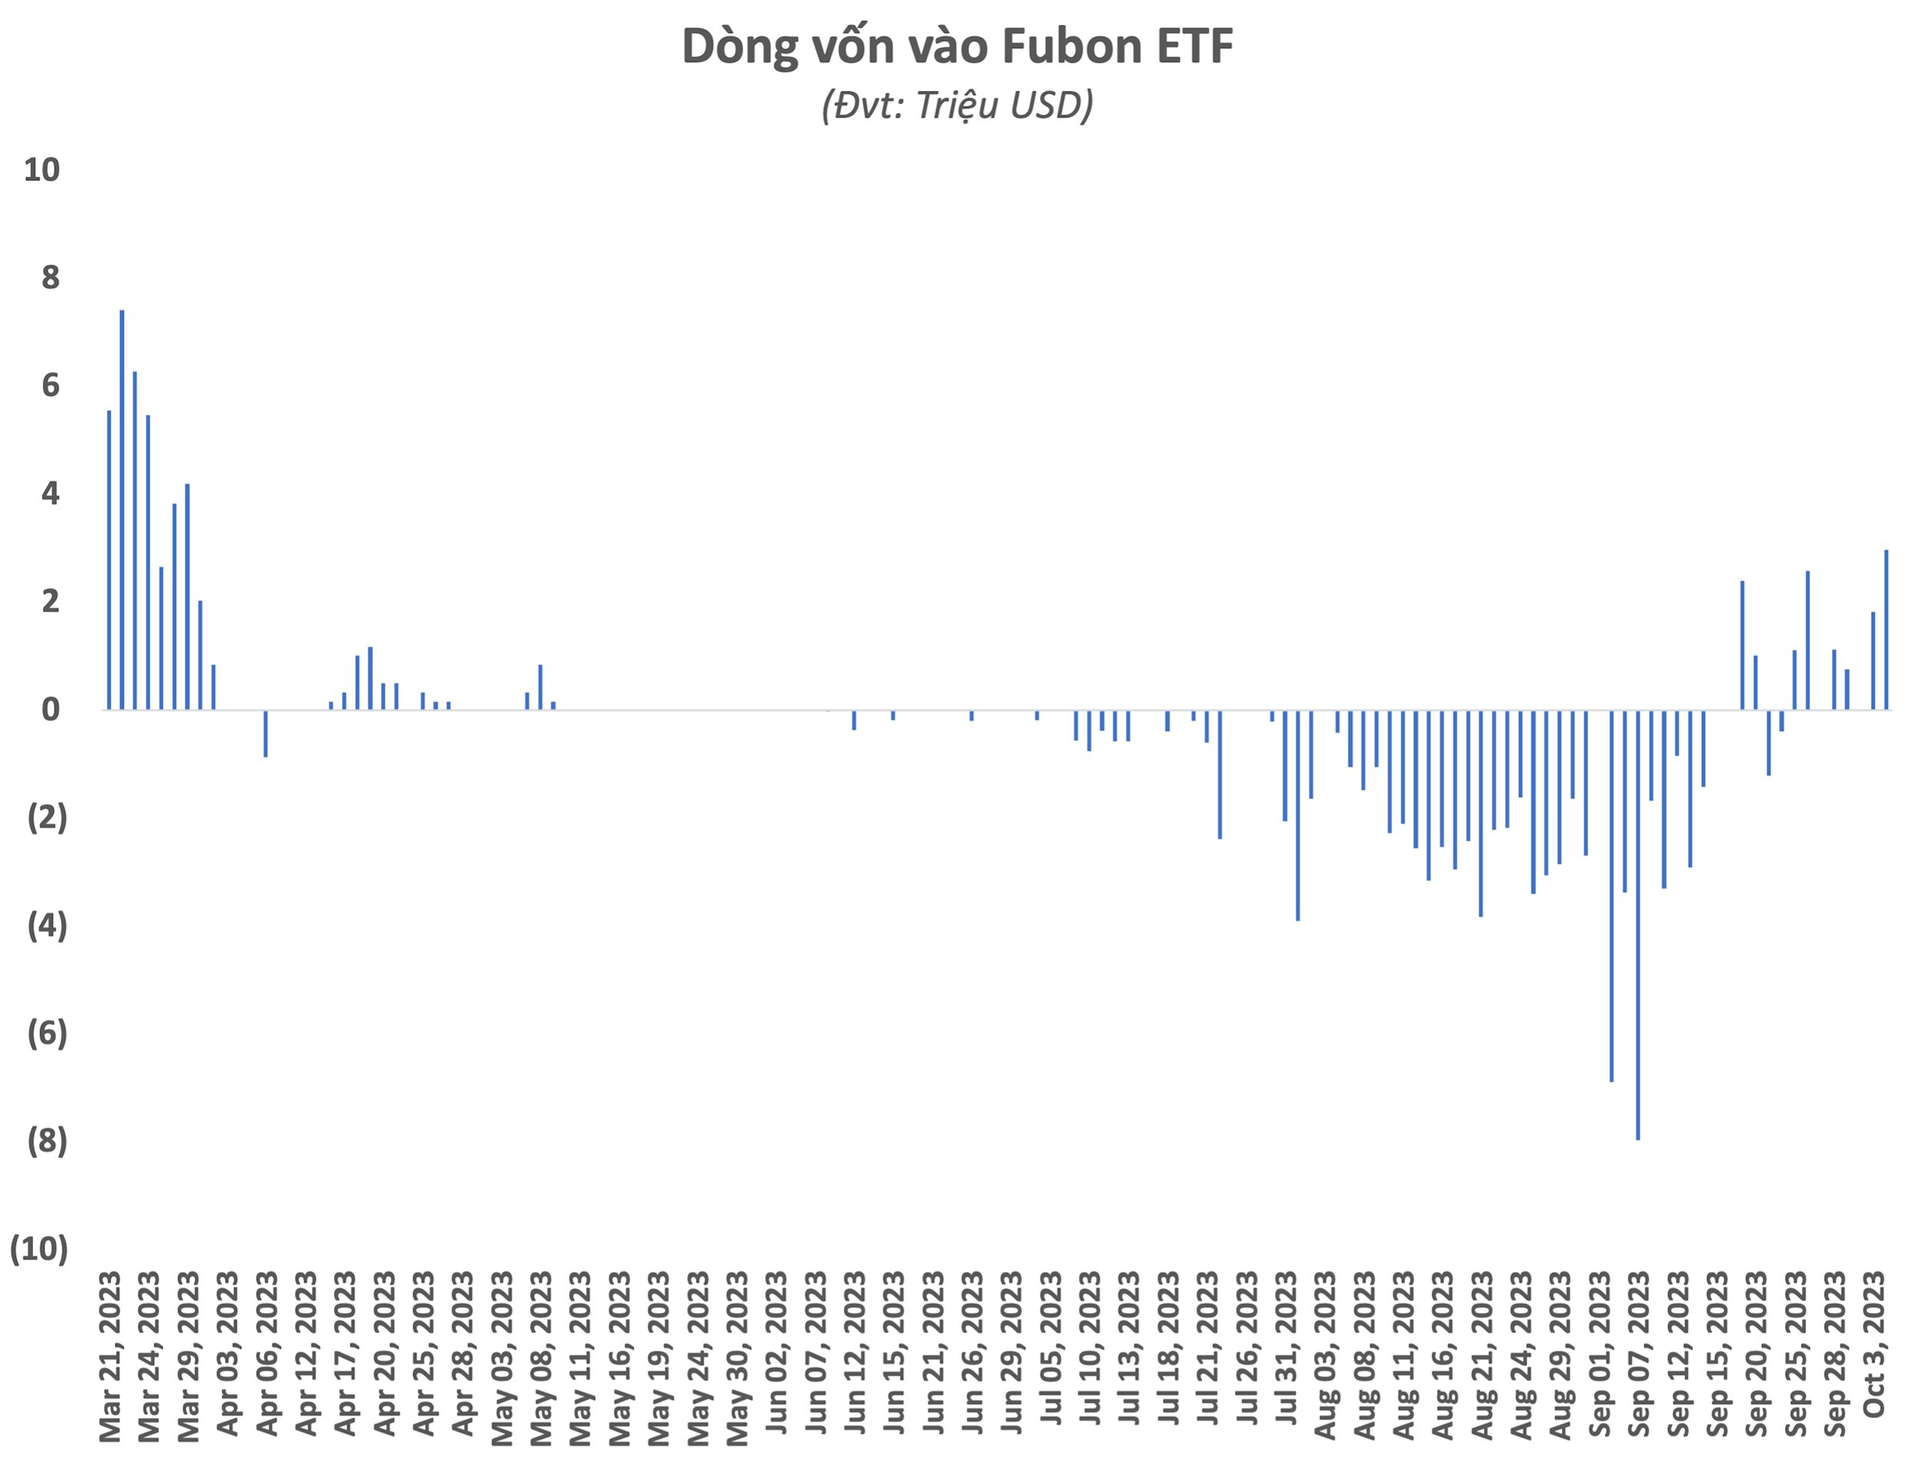 Chuỗi ngày hút vốn của Fubon ETF chưa dừng lại, ghi nhận phiên mua ròng cổ phiếu Việt Nam mạnh nhất nửa năm - Ảnh 1.